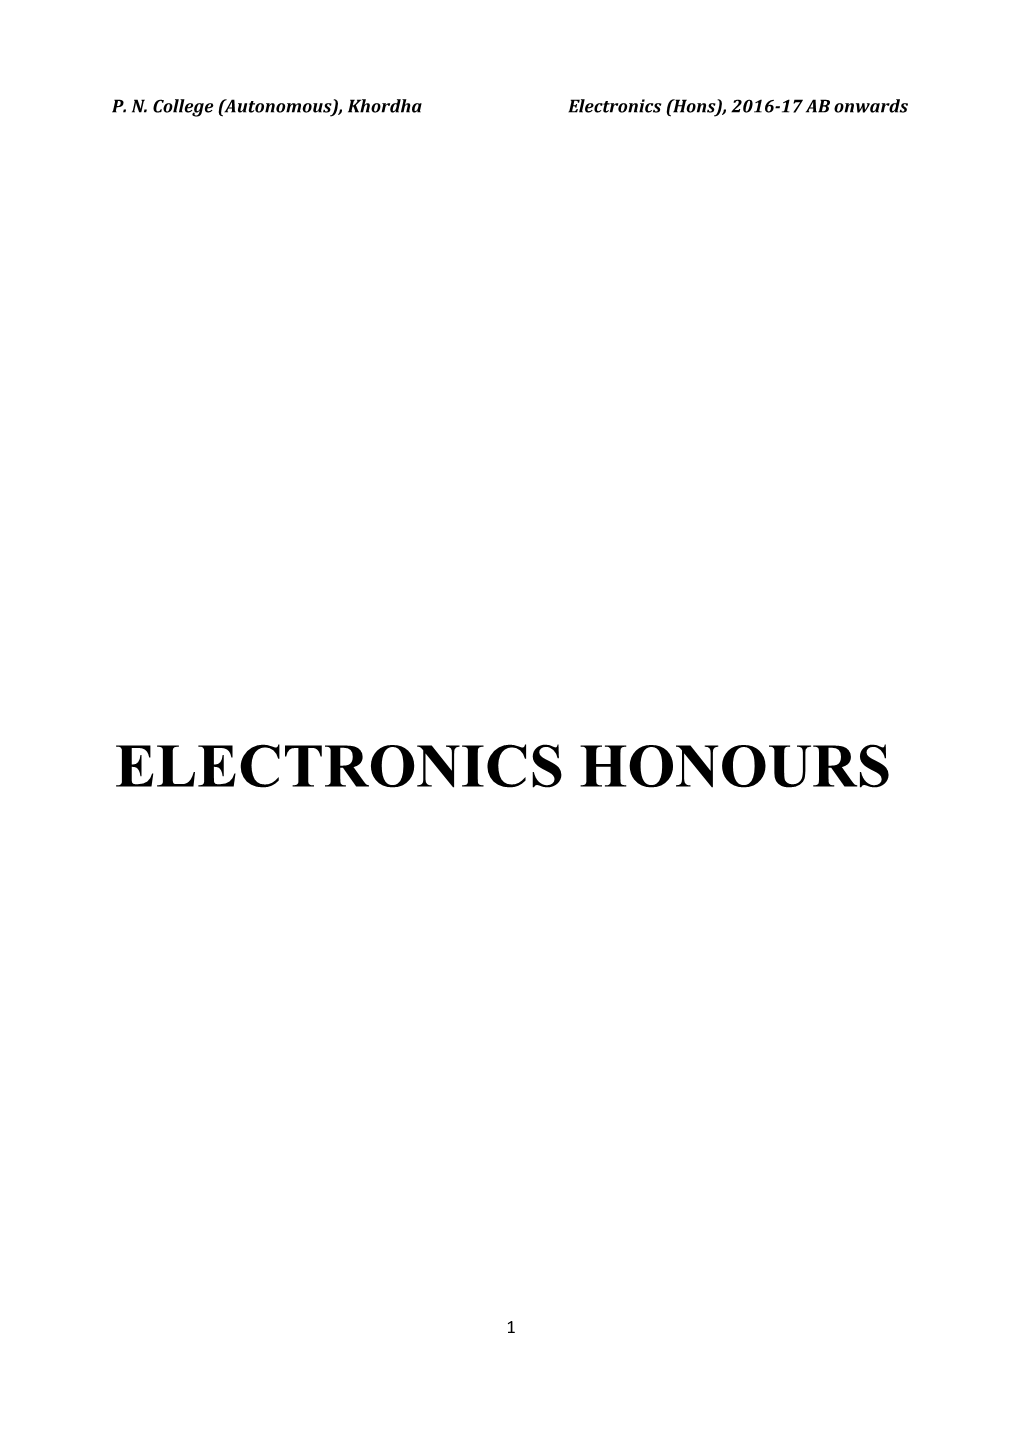 P. N. College (Autonomous), Khordhaelectronics (Hons), 2016-17 AB Onwards